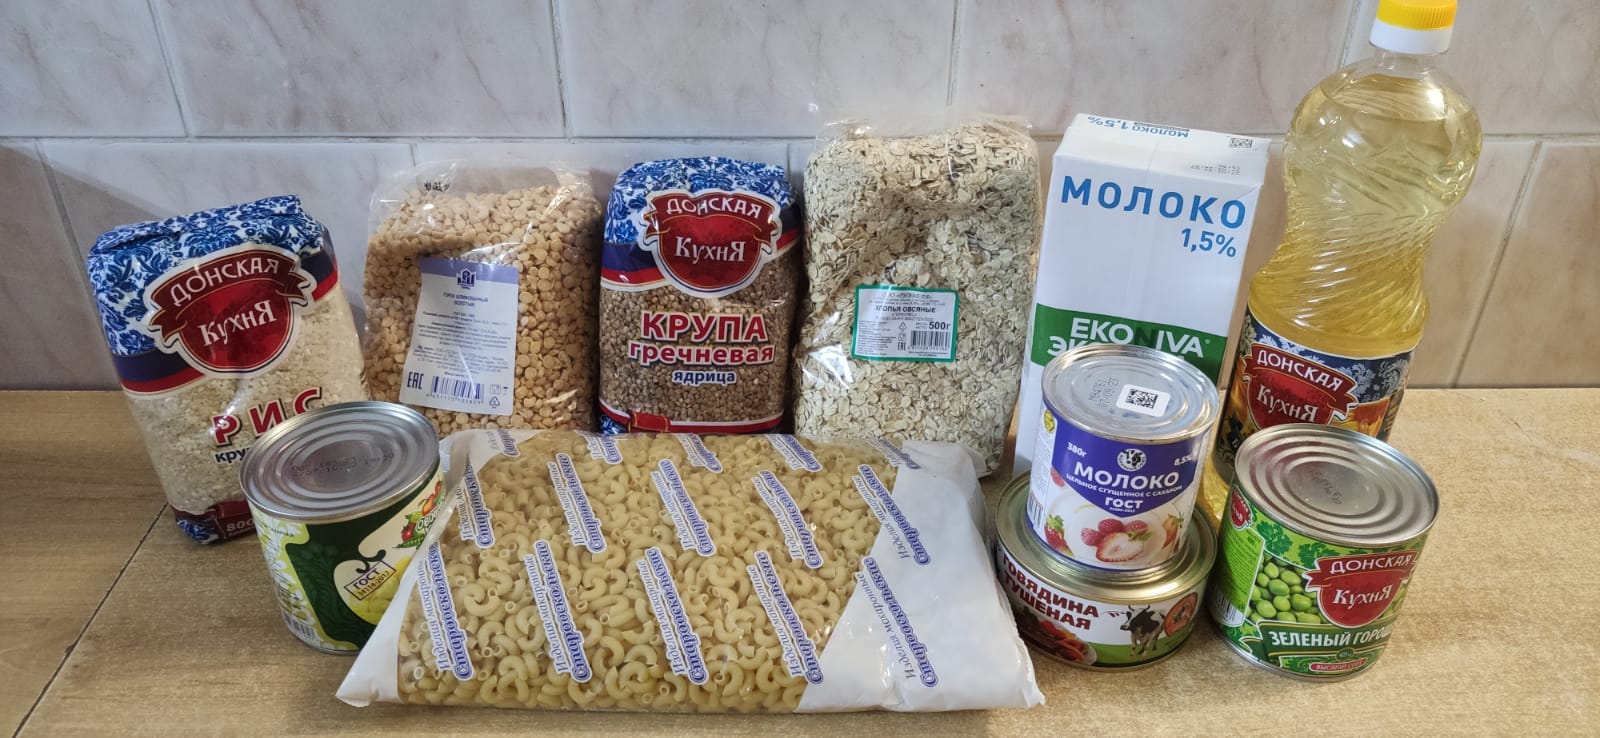 Благотворительный фонд Банк еды Русь передал Вяземской епархии продуктовые наборы для нуждающихся семей с детьми